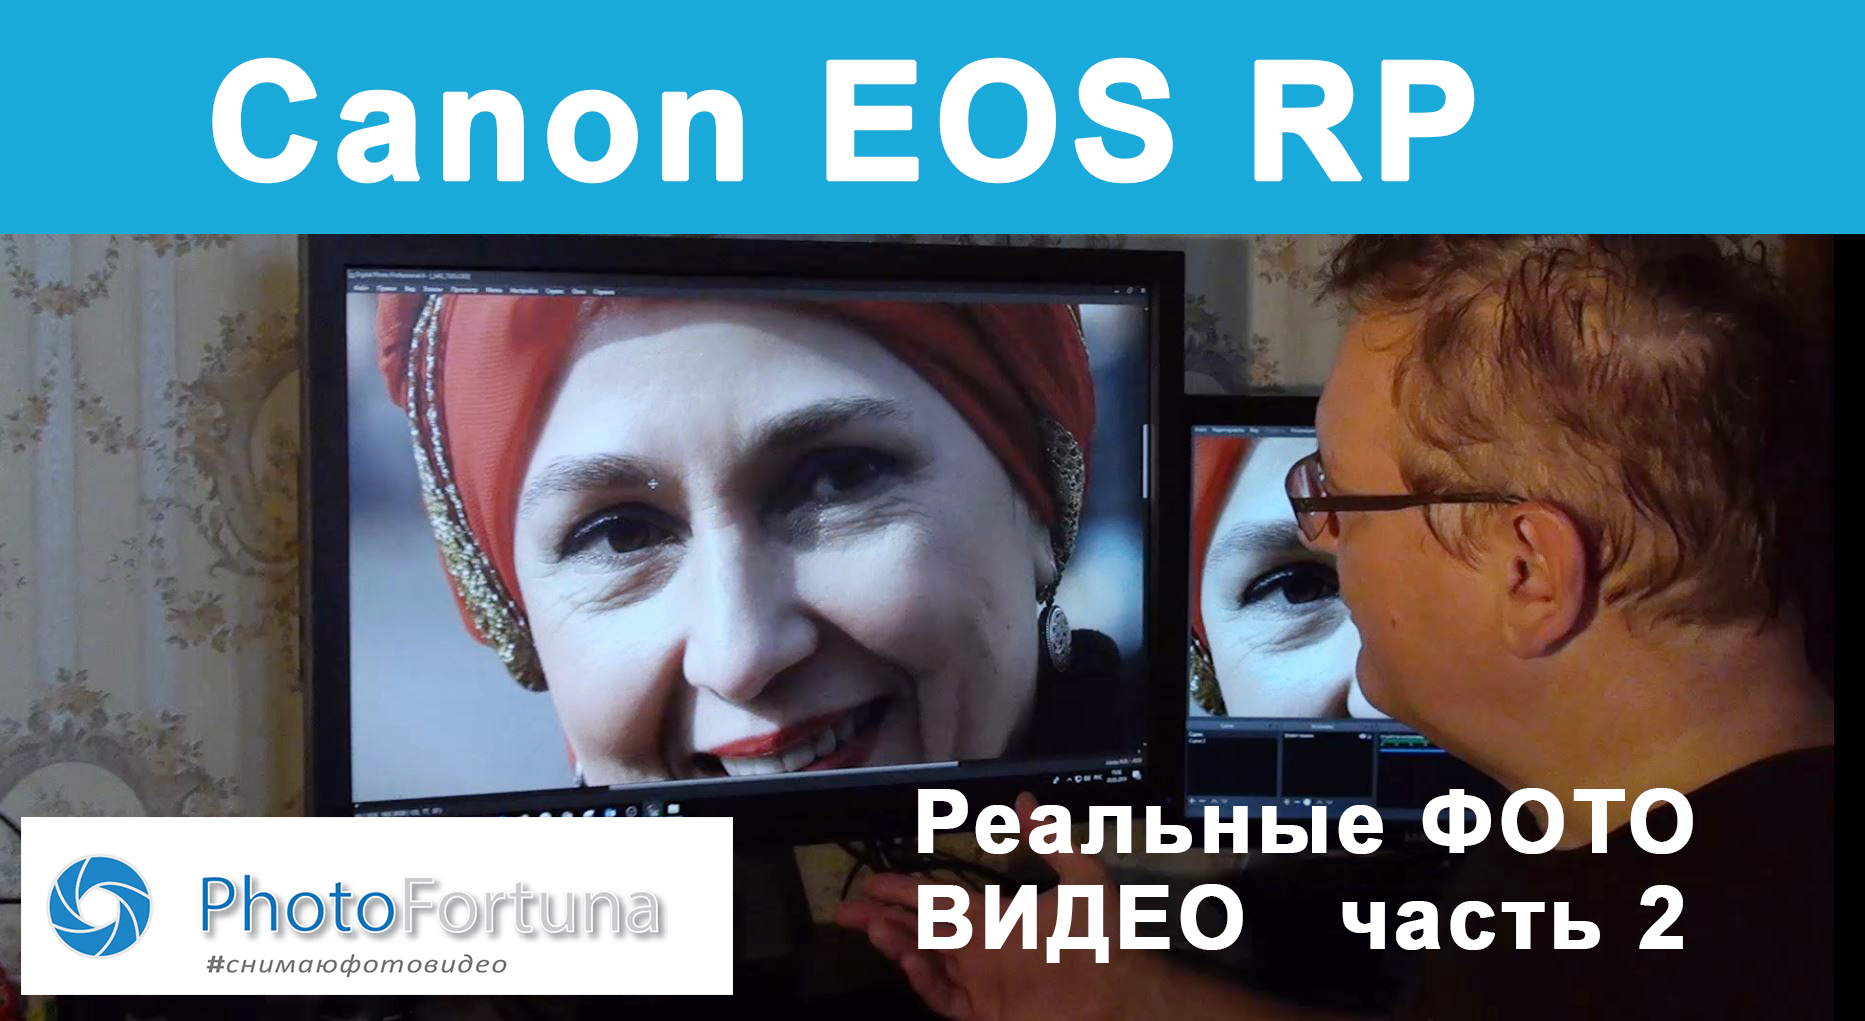 Вы сейчас просматриваете Реальный уличный Тест Canon EOS RP в Москве